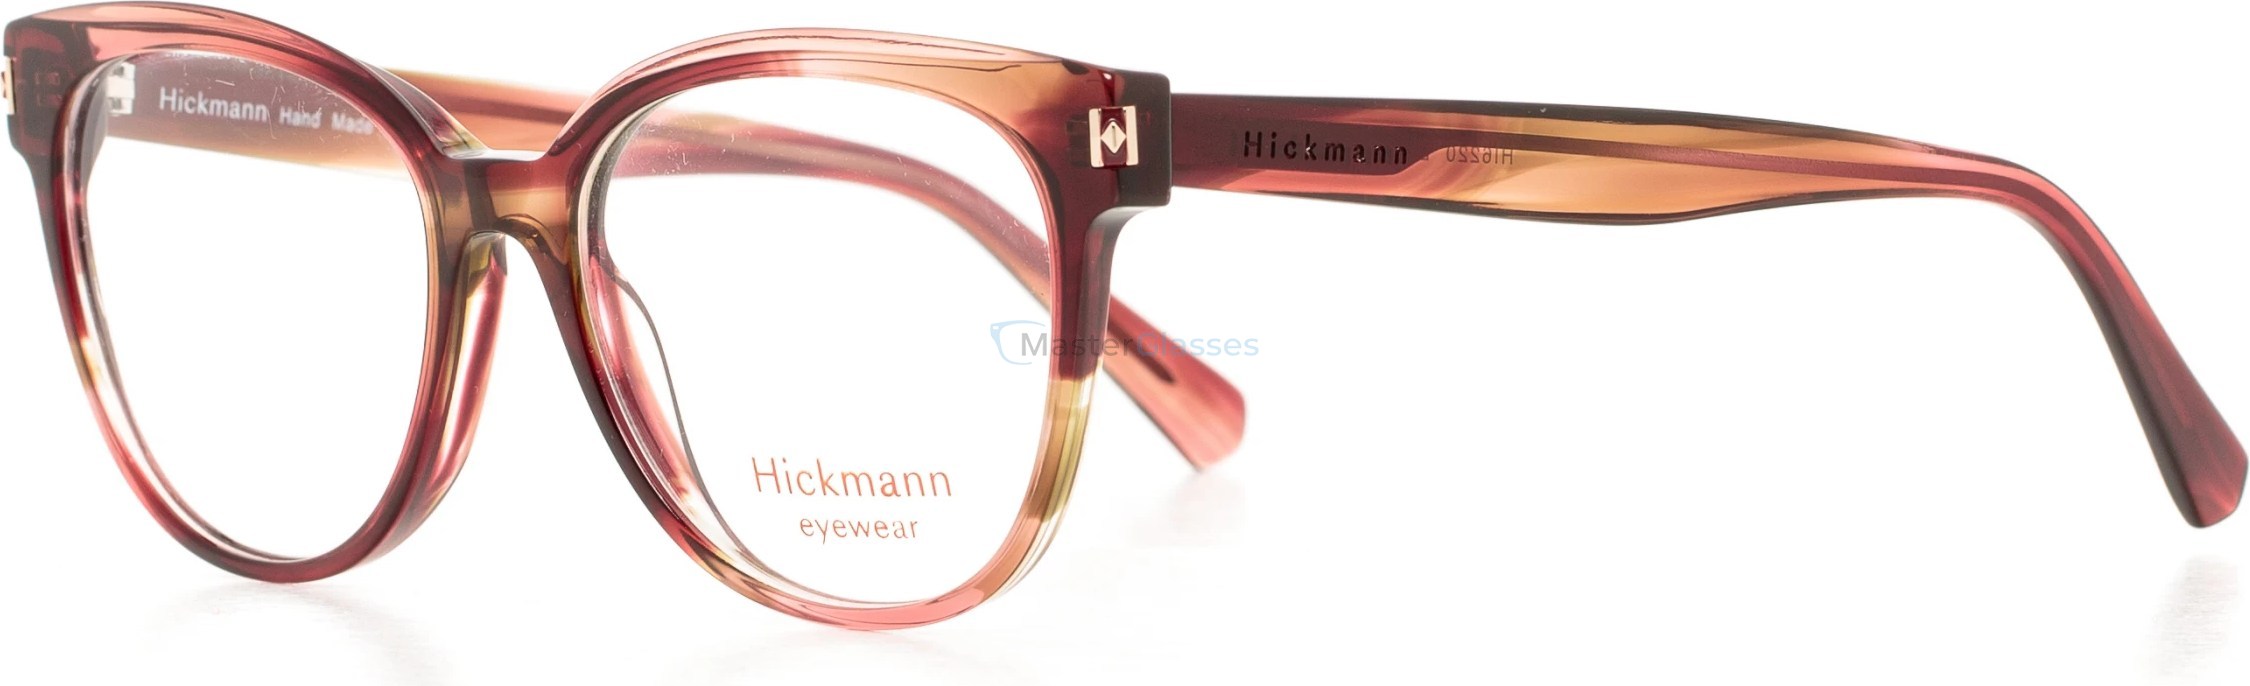  Hickmann HI6220 E02